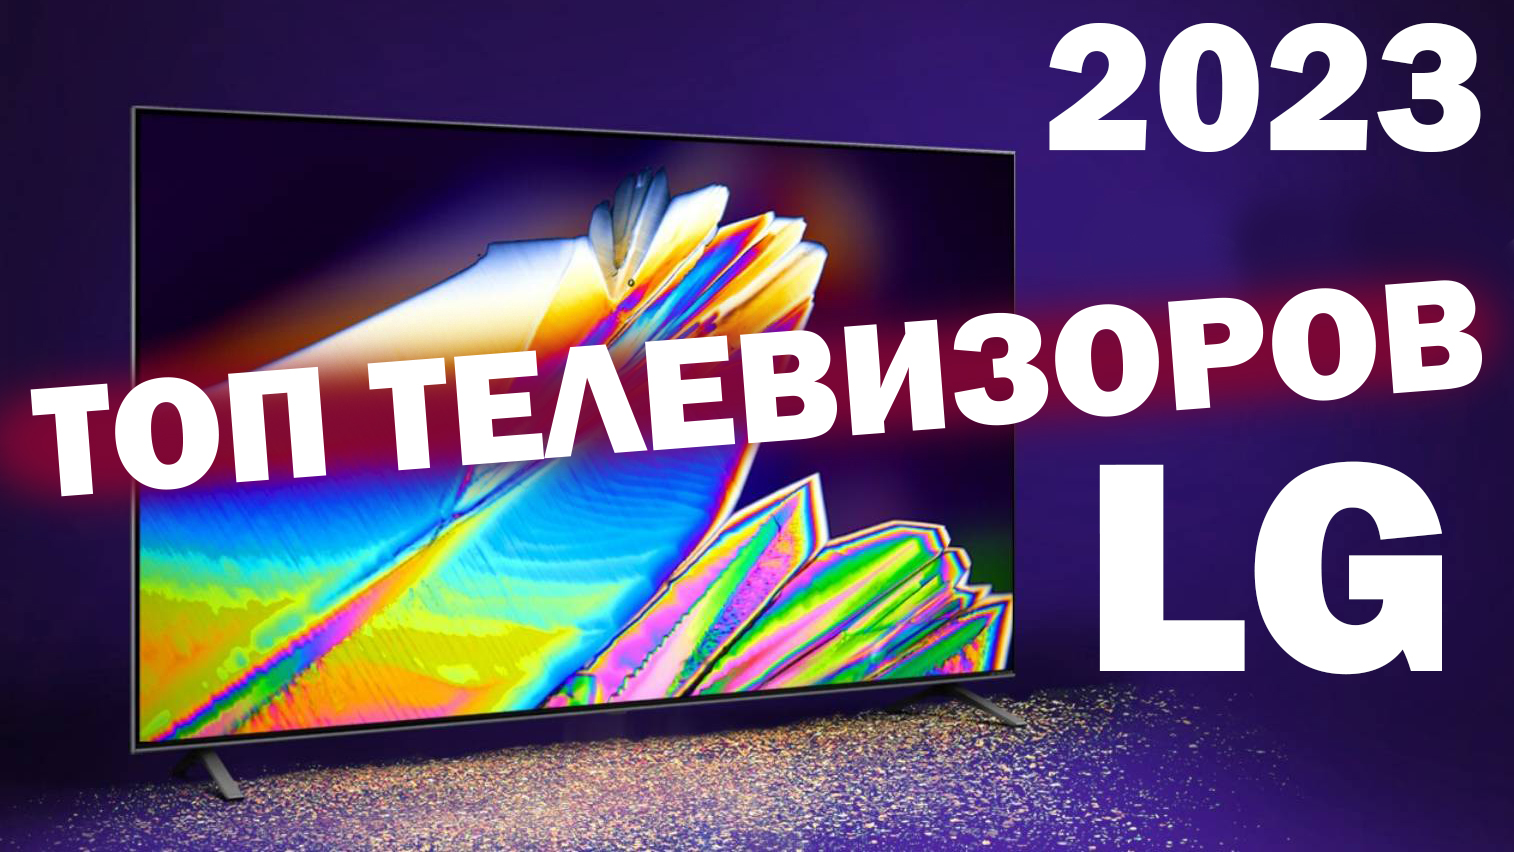 Топ телевизор 2023 года. LG 2023. Линейка телевизоров LG 2023 года. LG 2023 43 белый. Qarvid TV 2023.